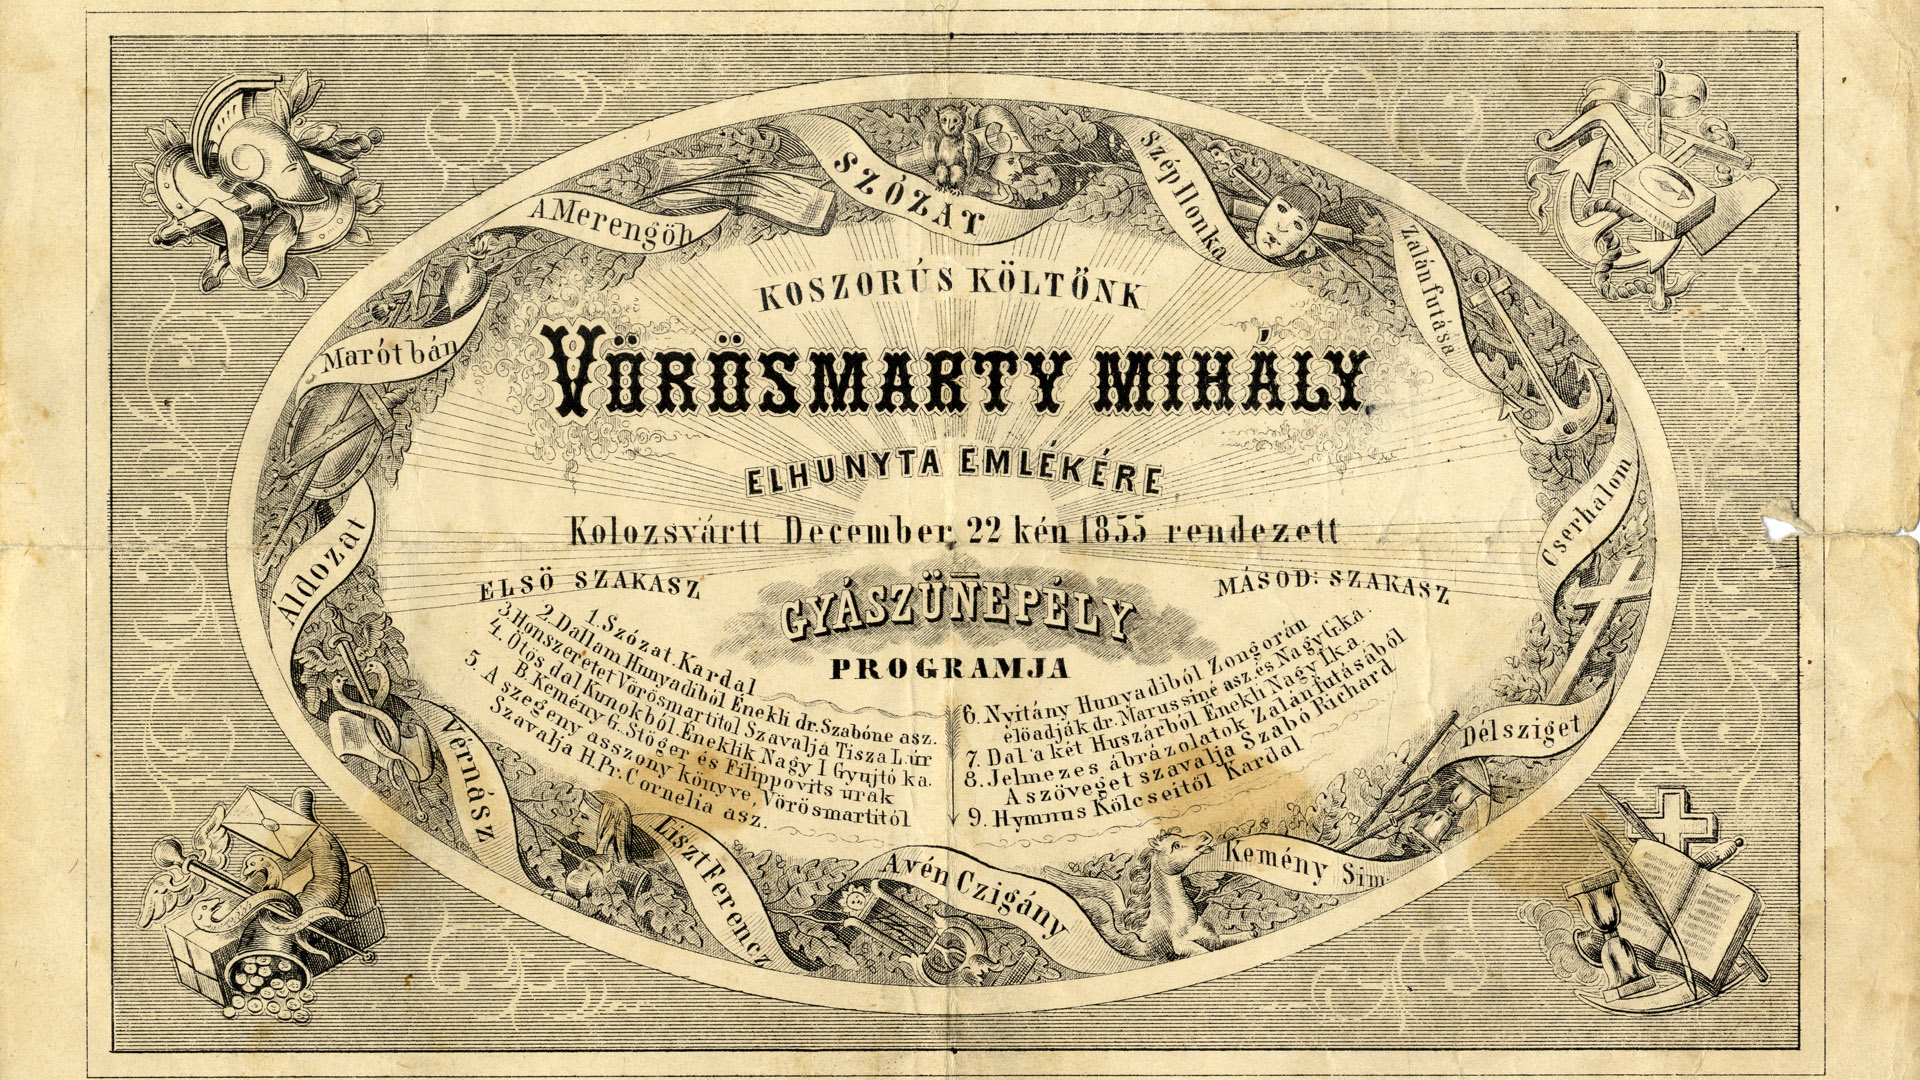 Meghívó a Vörösmarty Mihály elhunyta emlékére Kolozsvárott 1855. december 22-én rendezett gyászünnepélyre